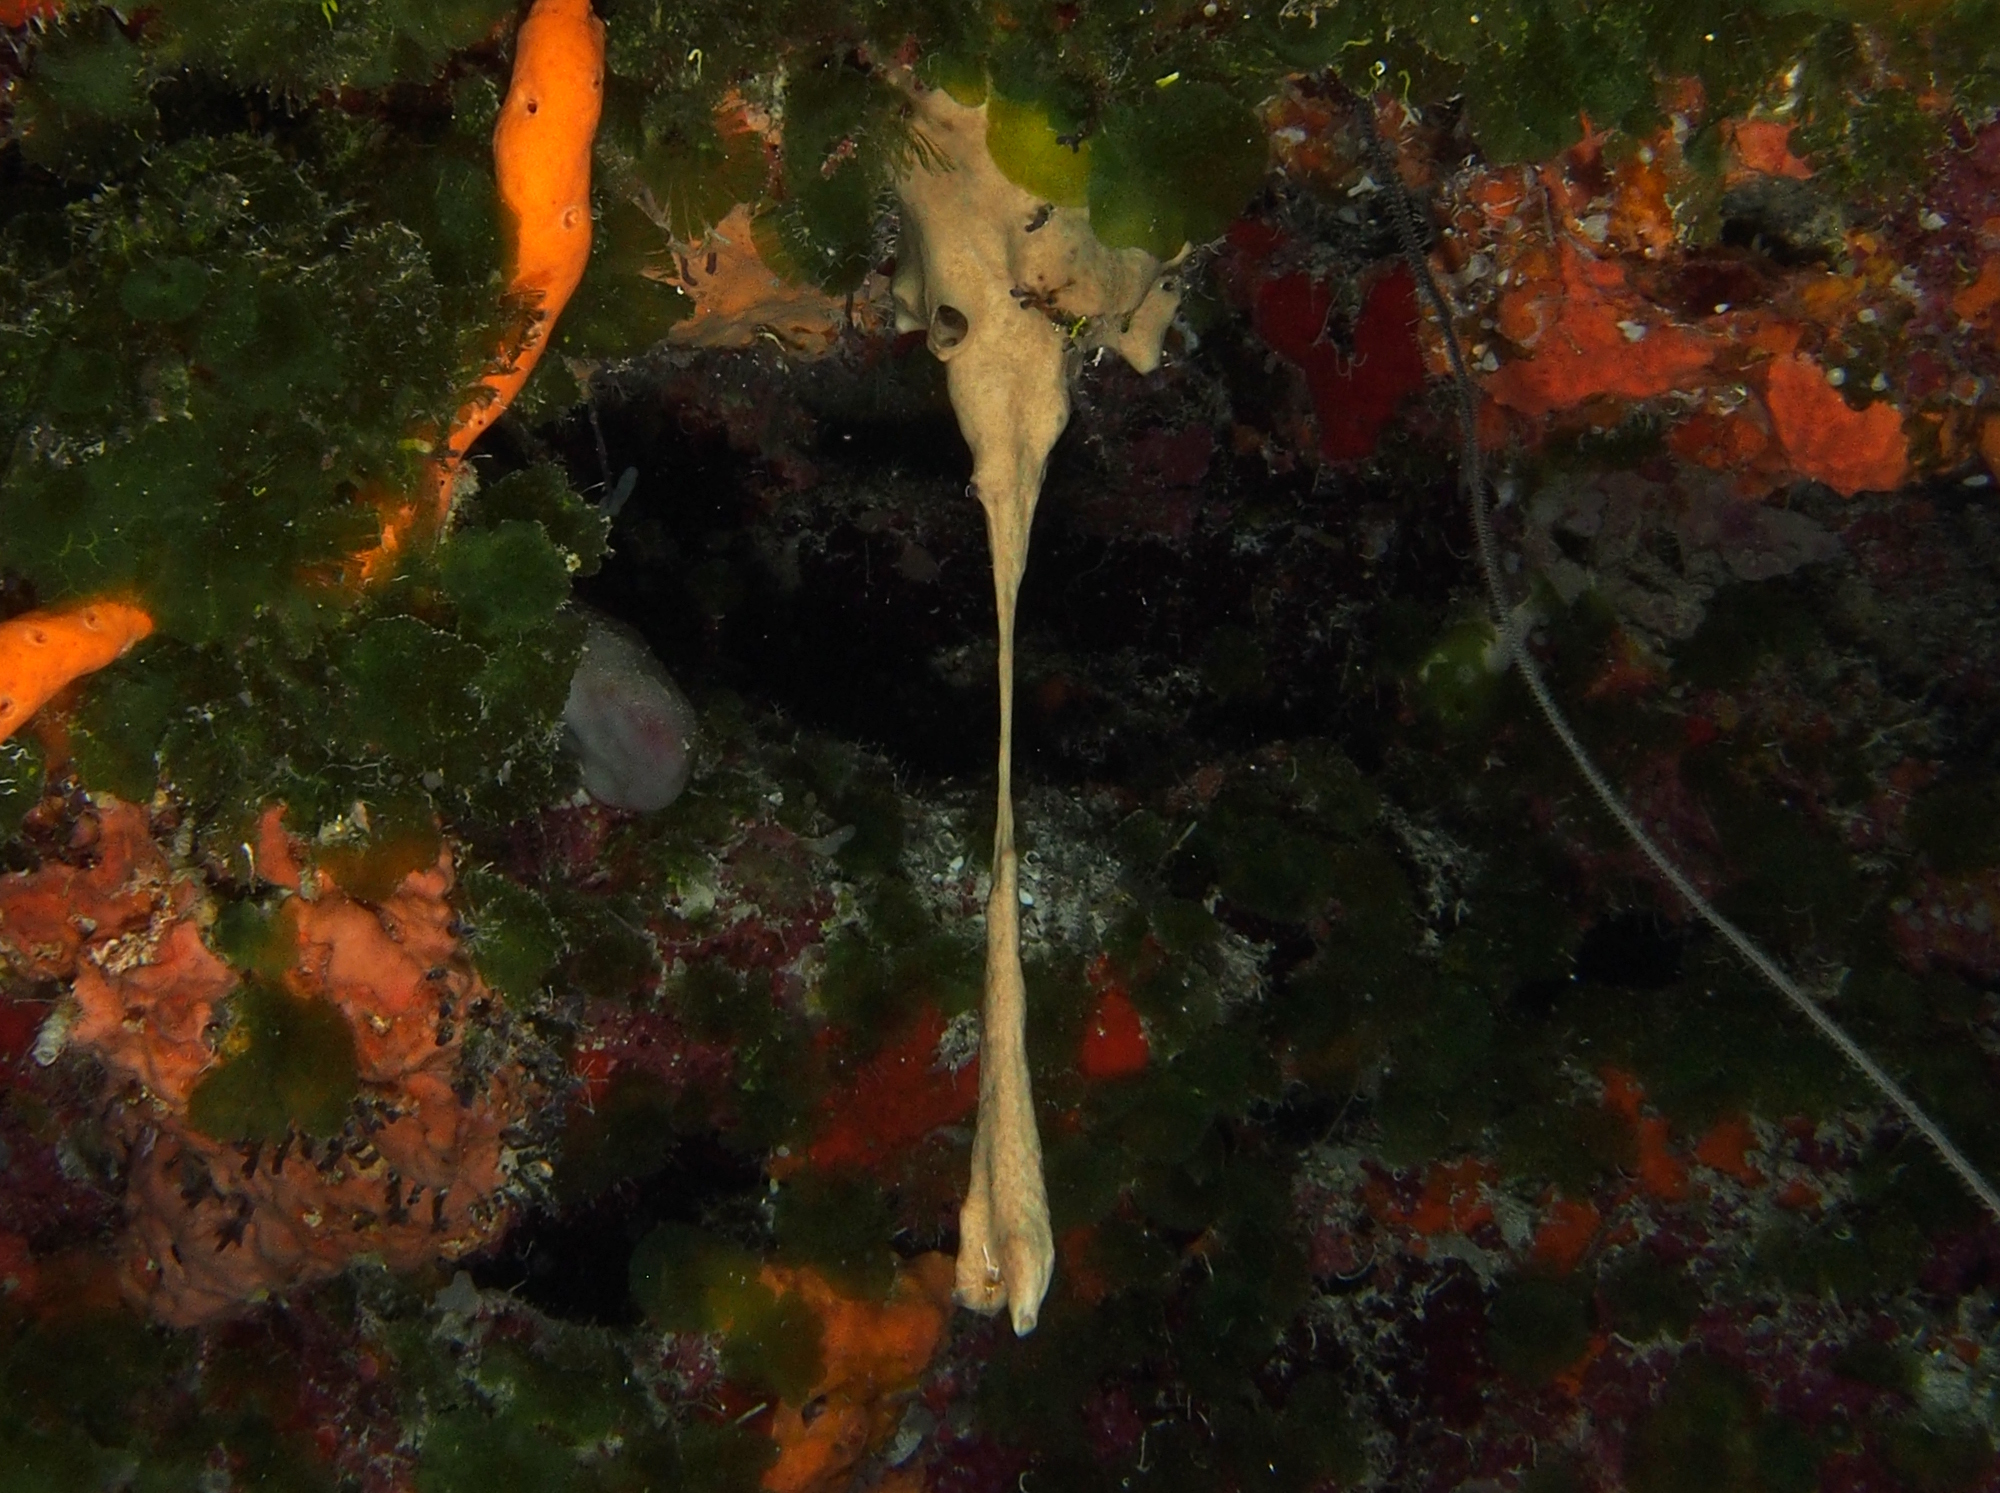 Viscous Sponge - Plakortis angulospiculatus